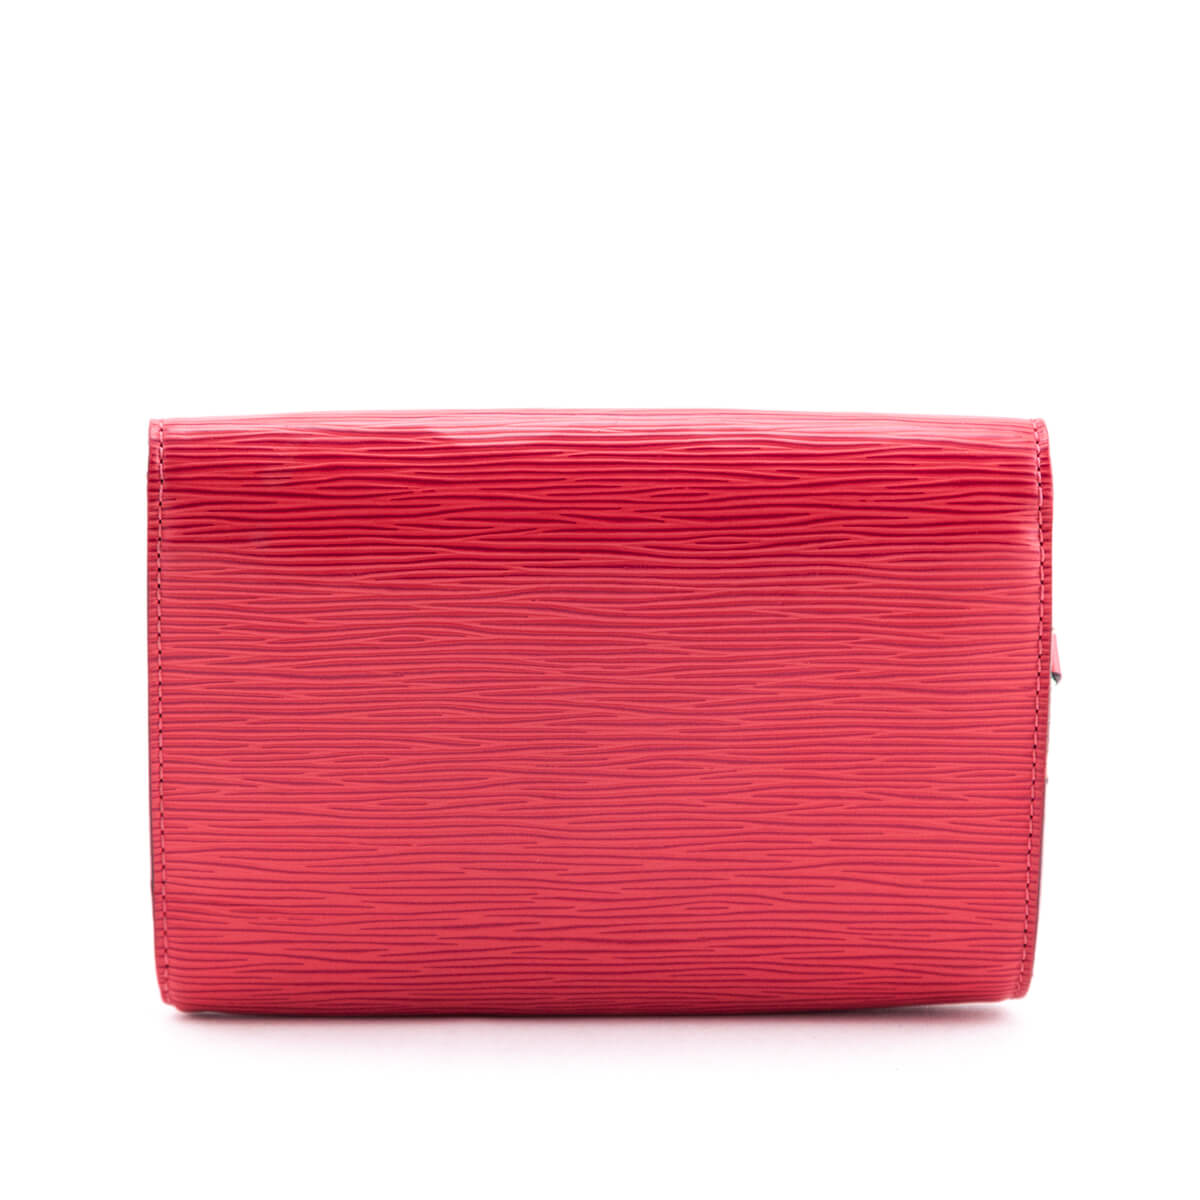 Louis Vuitton Louise Shoulder Bag Epi Leather PM Pink 217940193